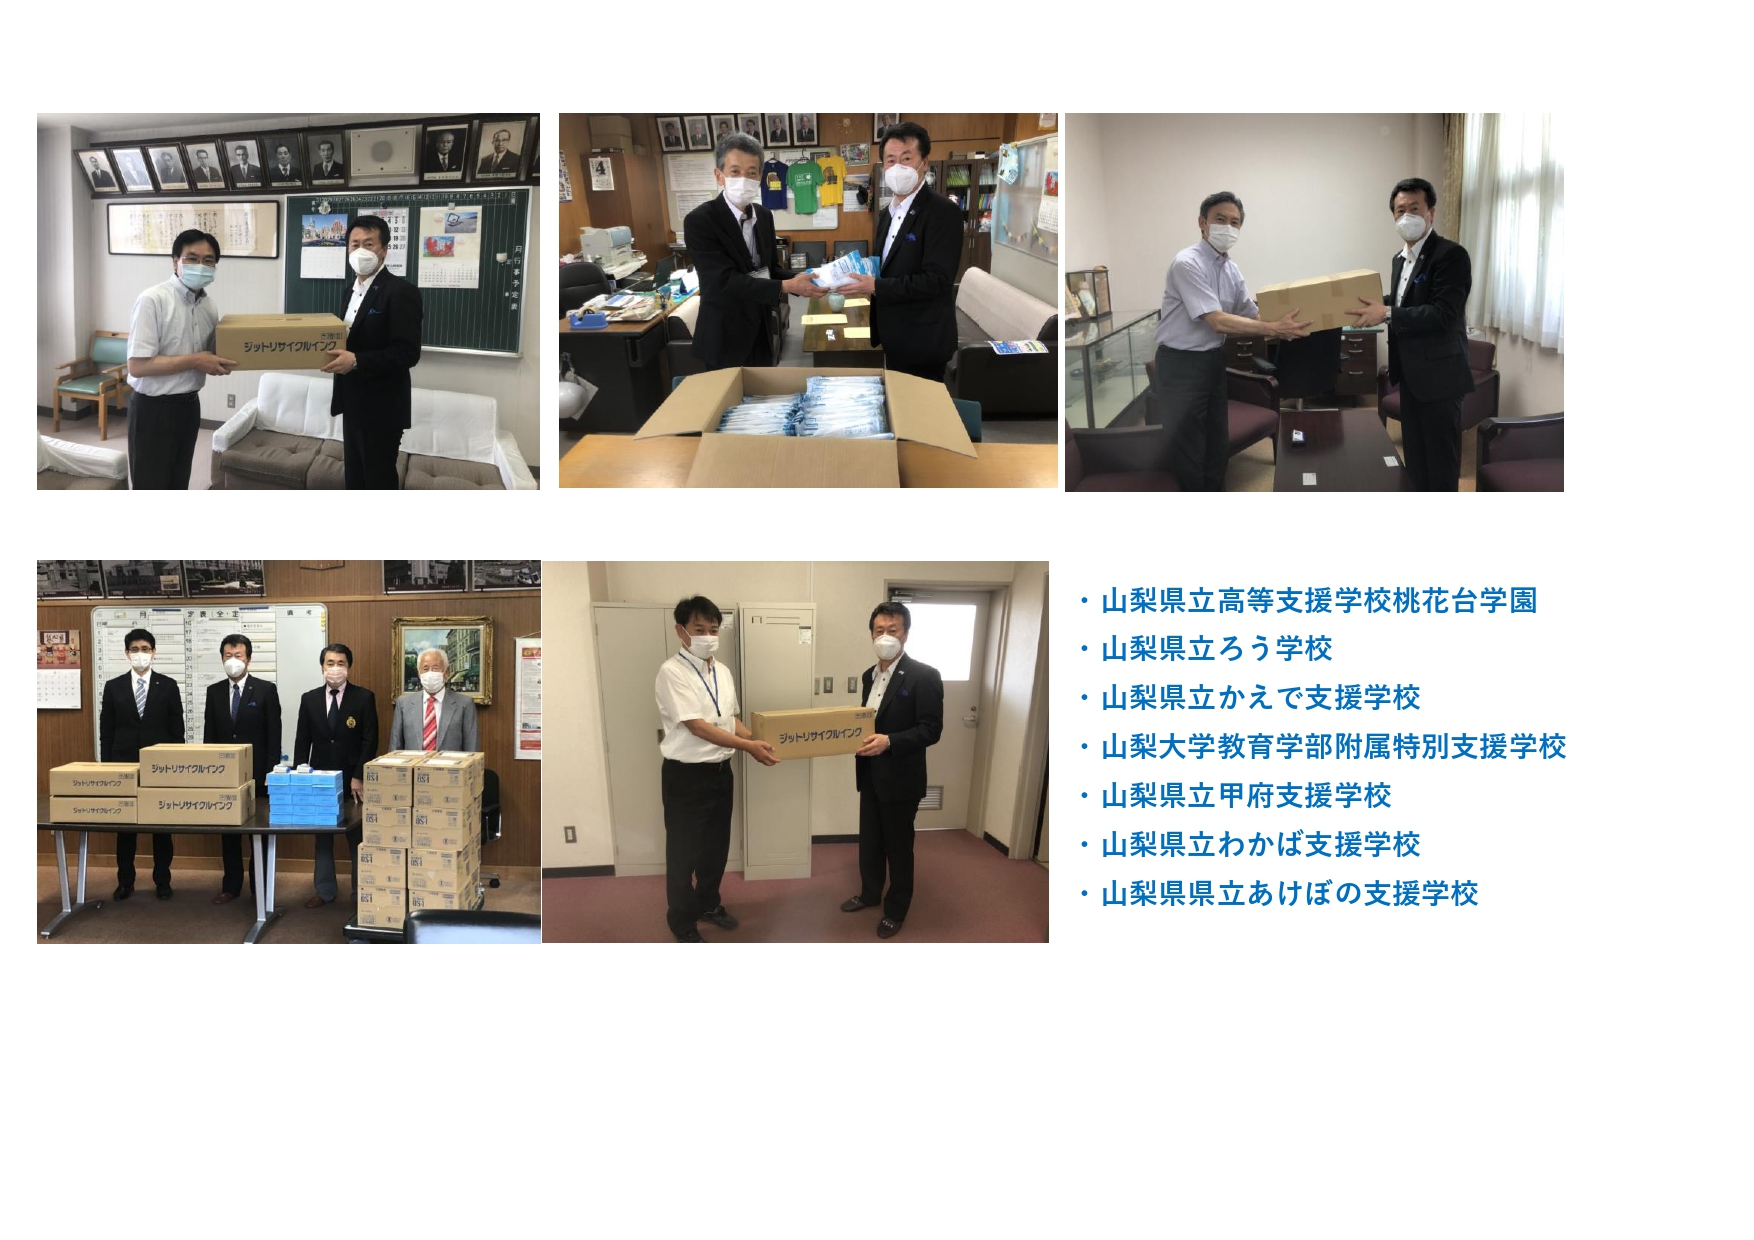 Spenden von Masken an 7 Schulen in der Präfektur